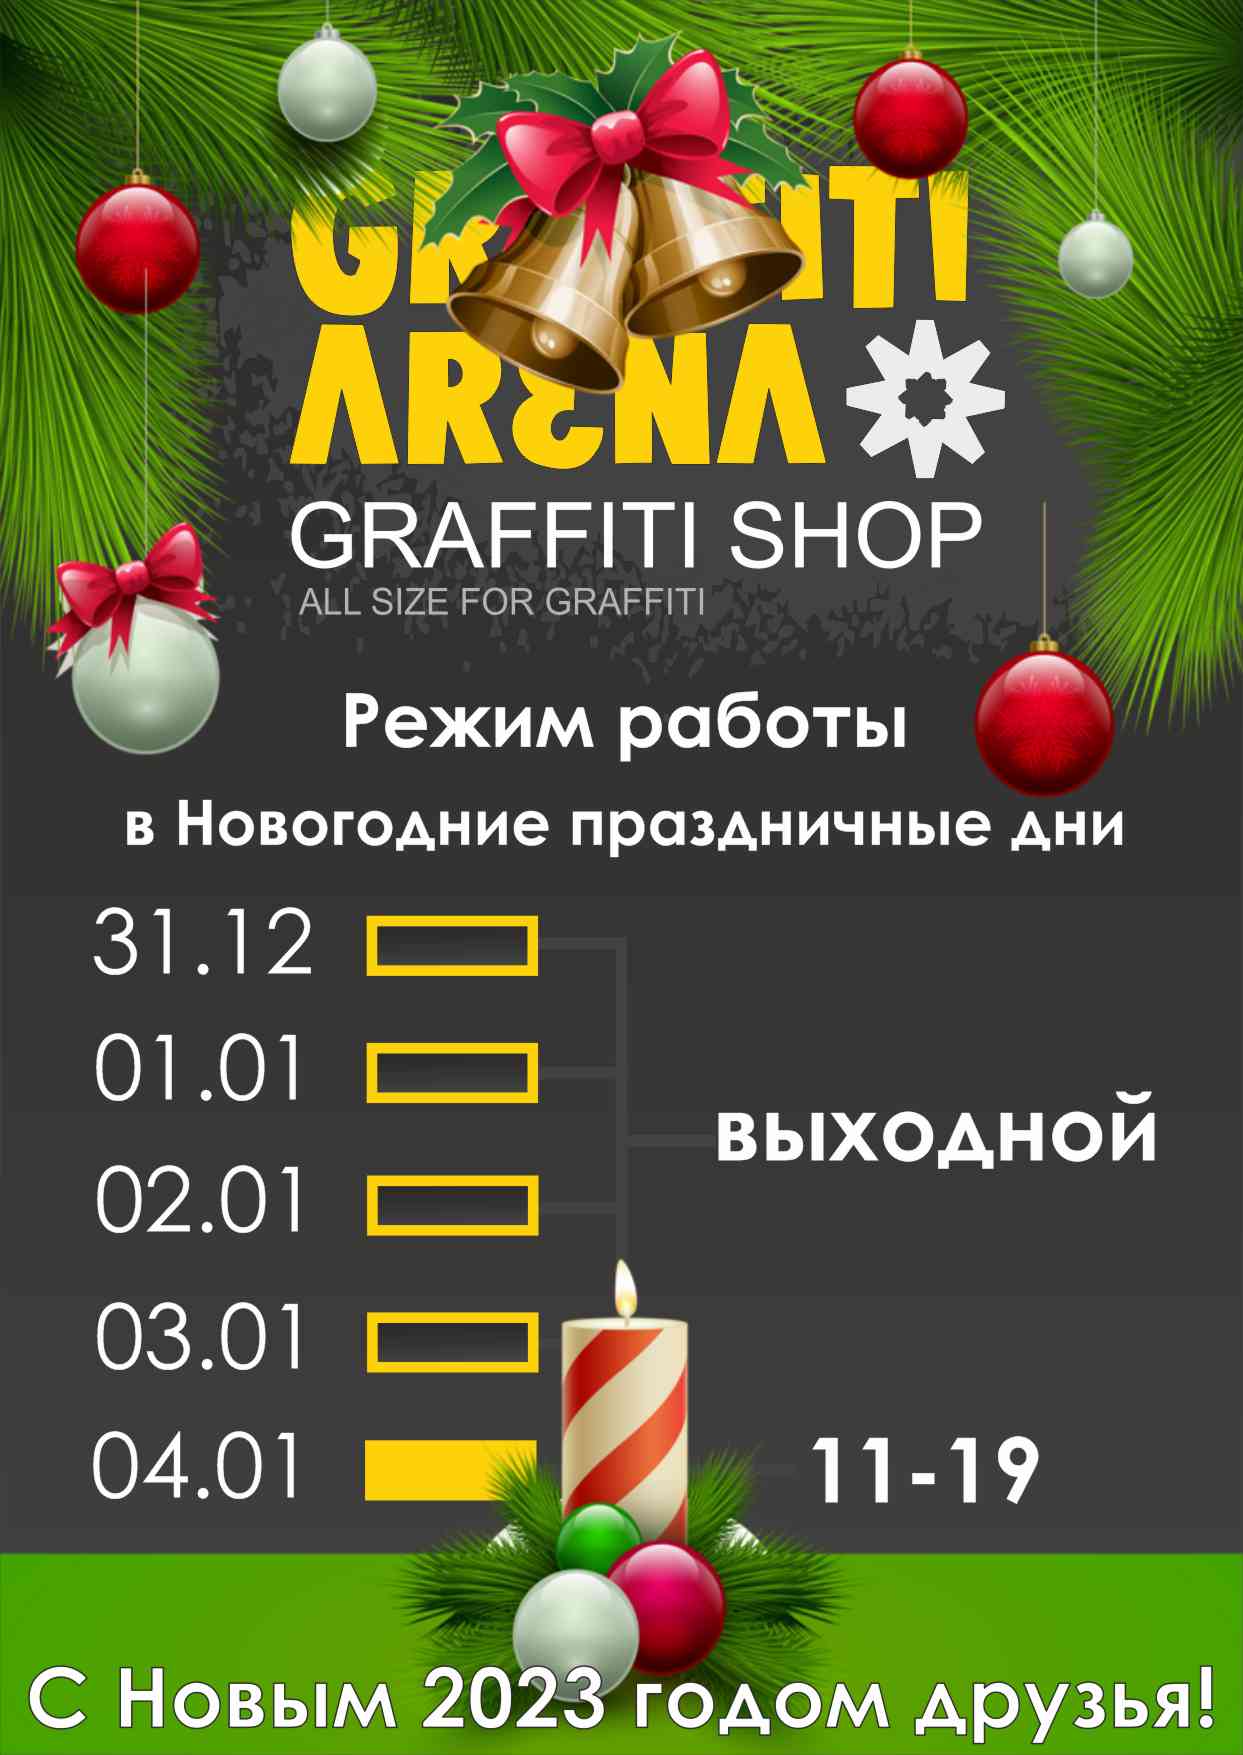 Режим работы GRAFFITI ARENA в Новогодние праздничные дни